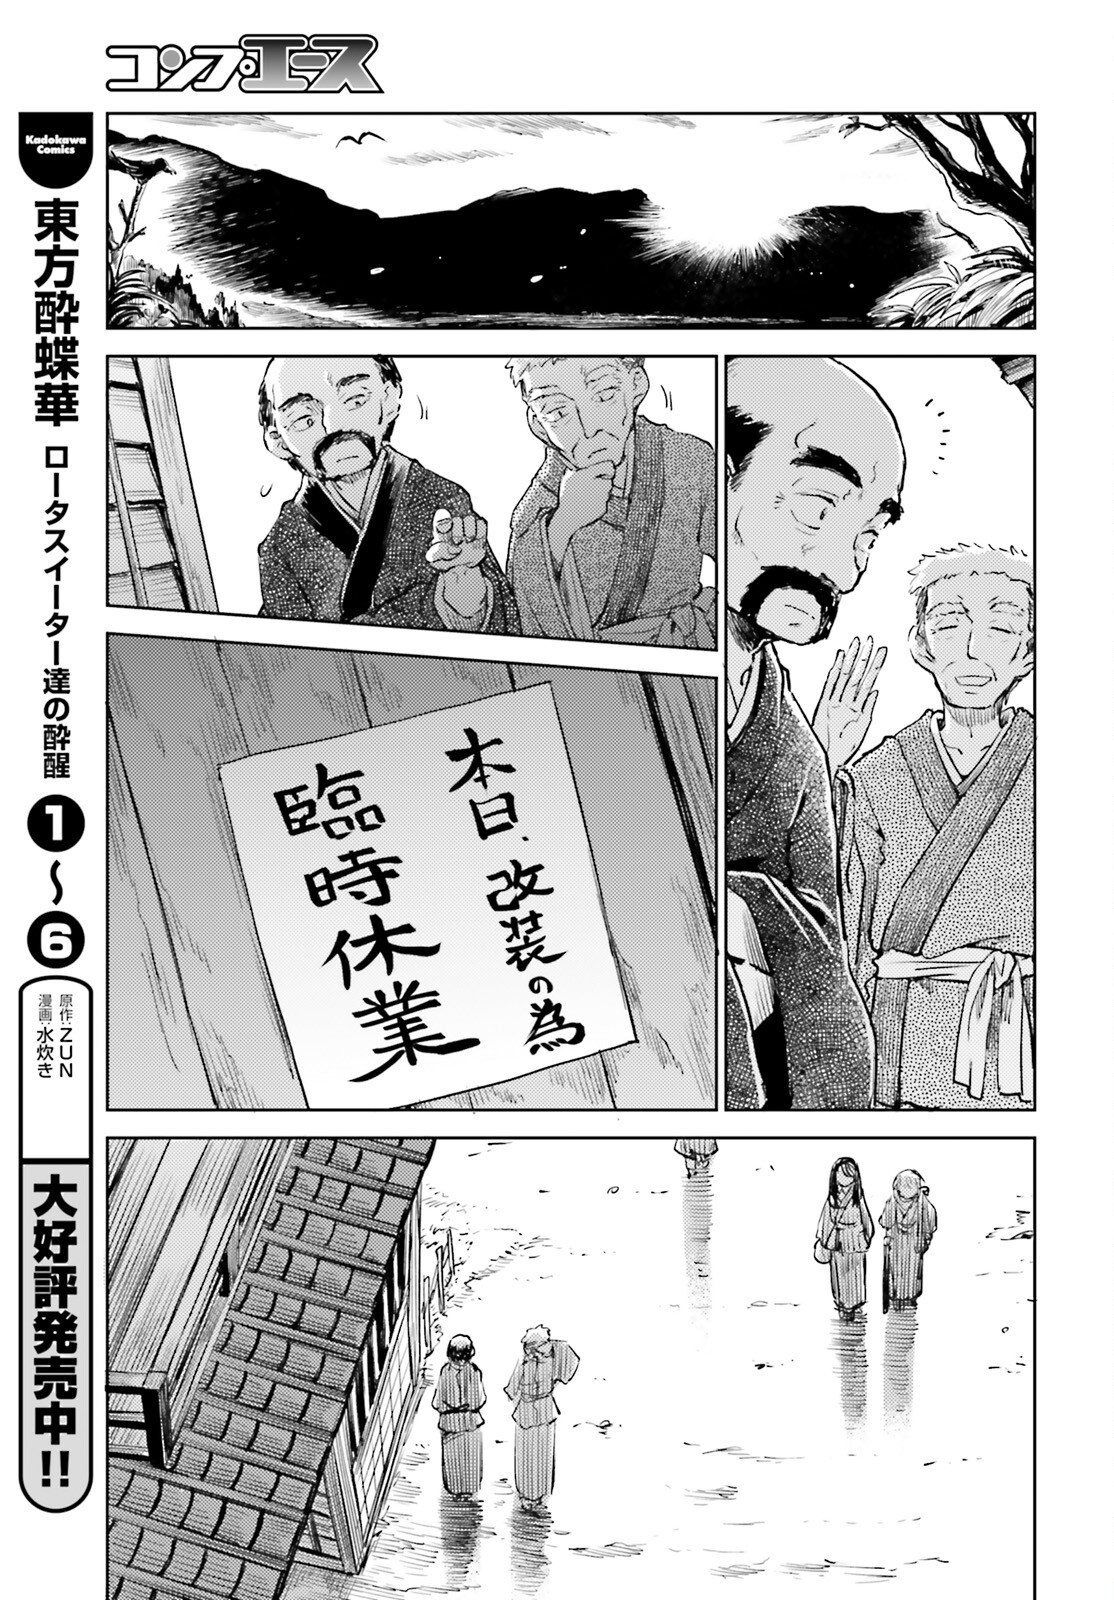 東方酔蝶華 ロータスイーター達の酔醒 第53話 - Page 3